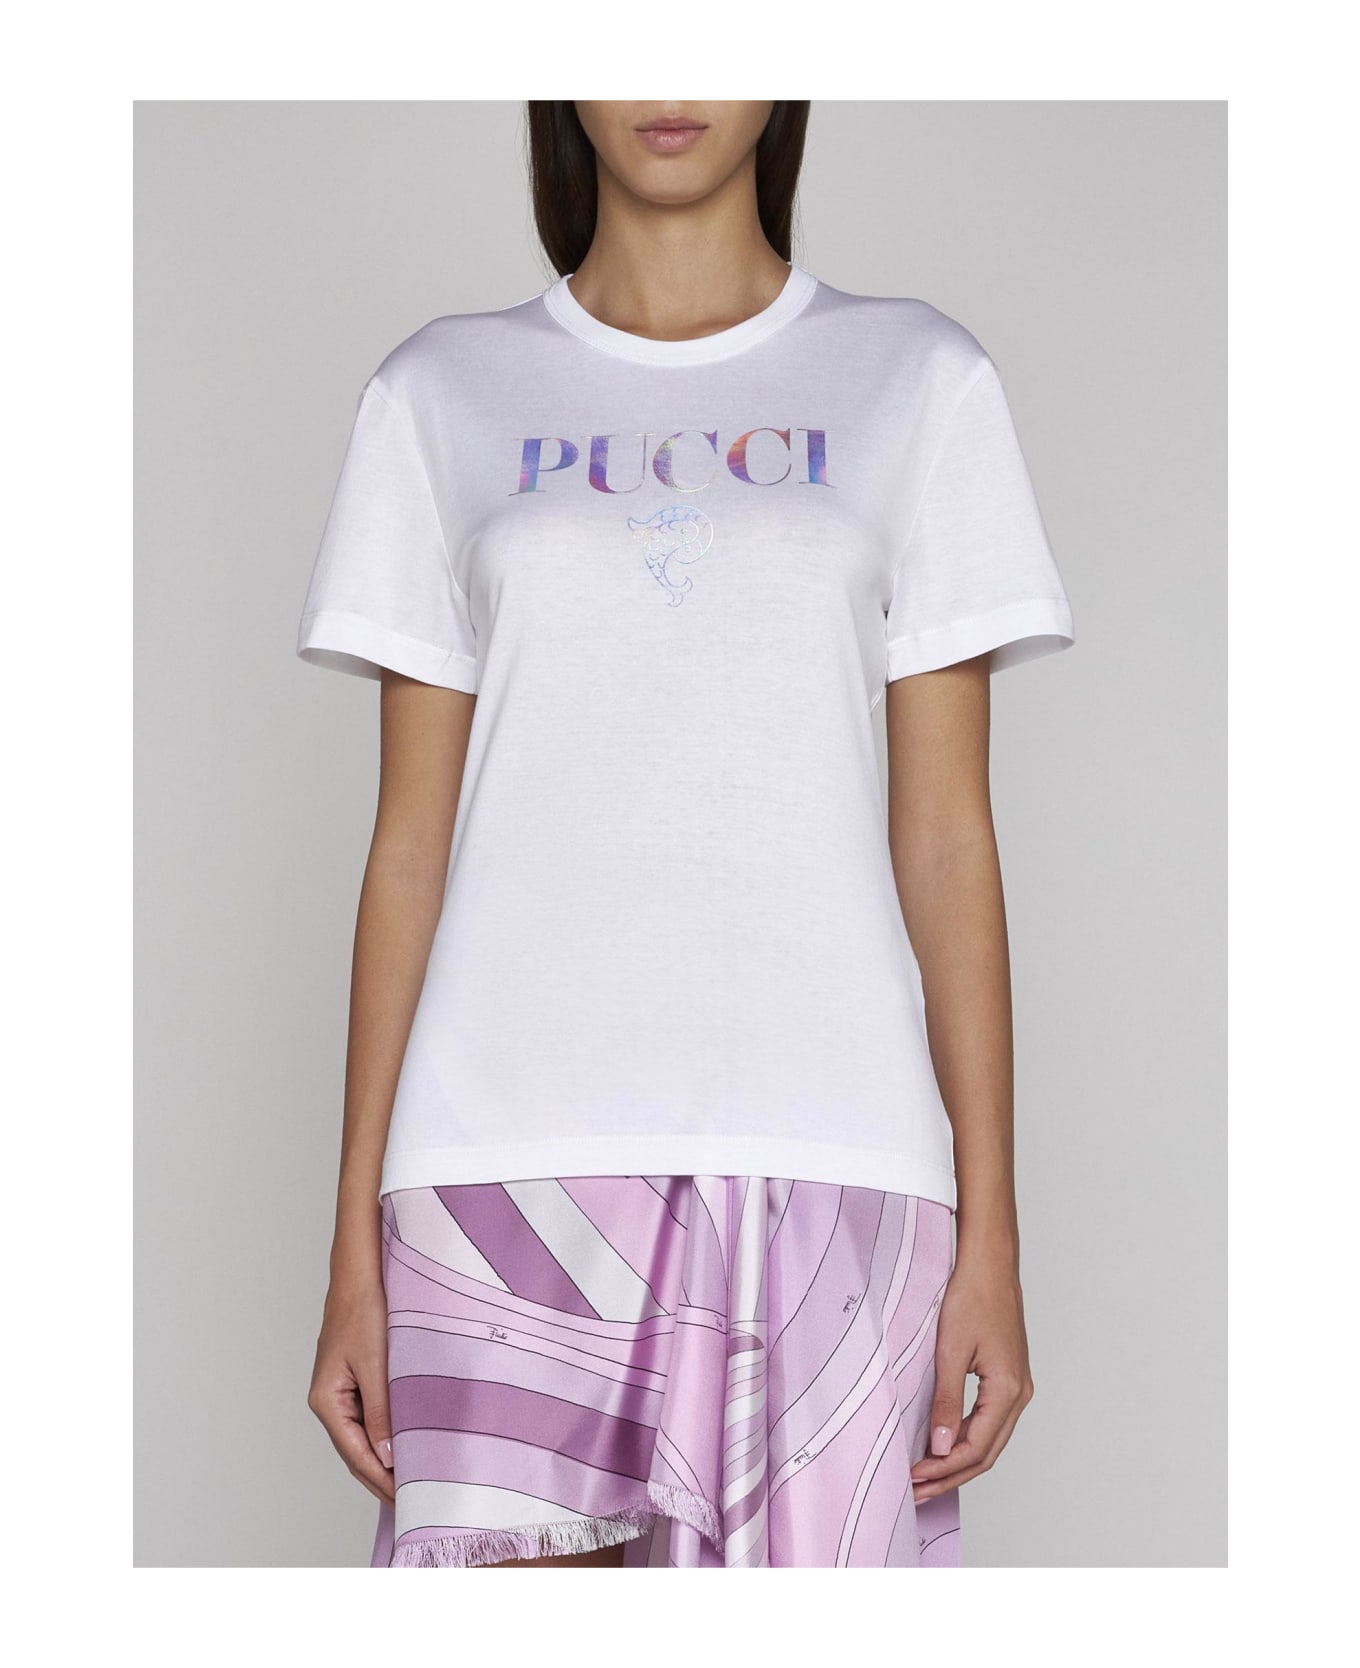 Pucci Logo Cotton T-shirt - BIANCO